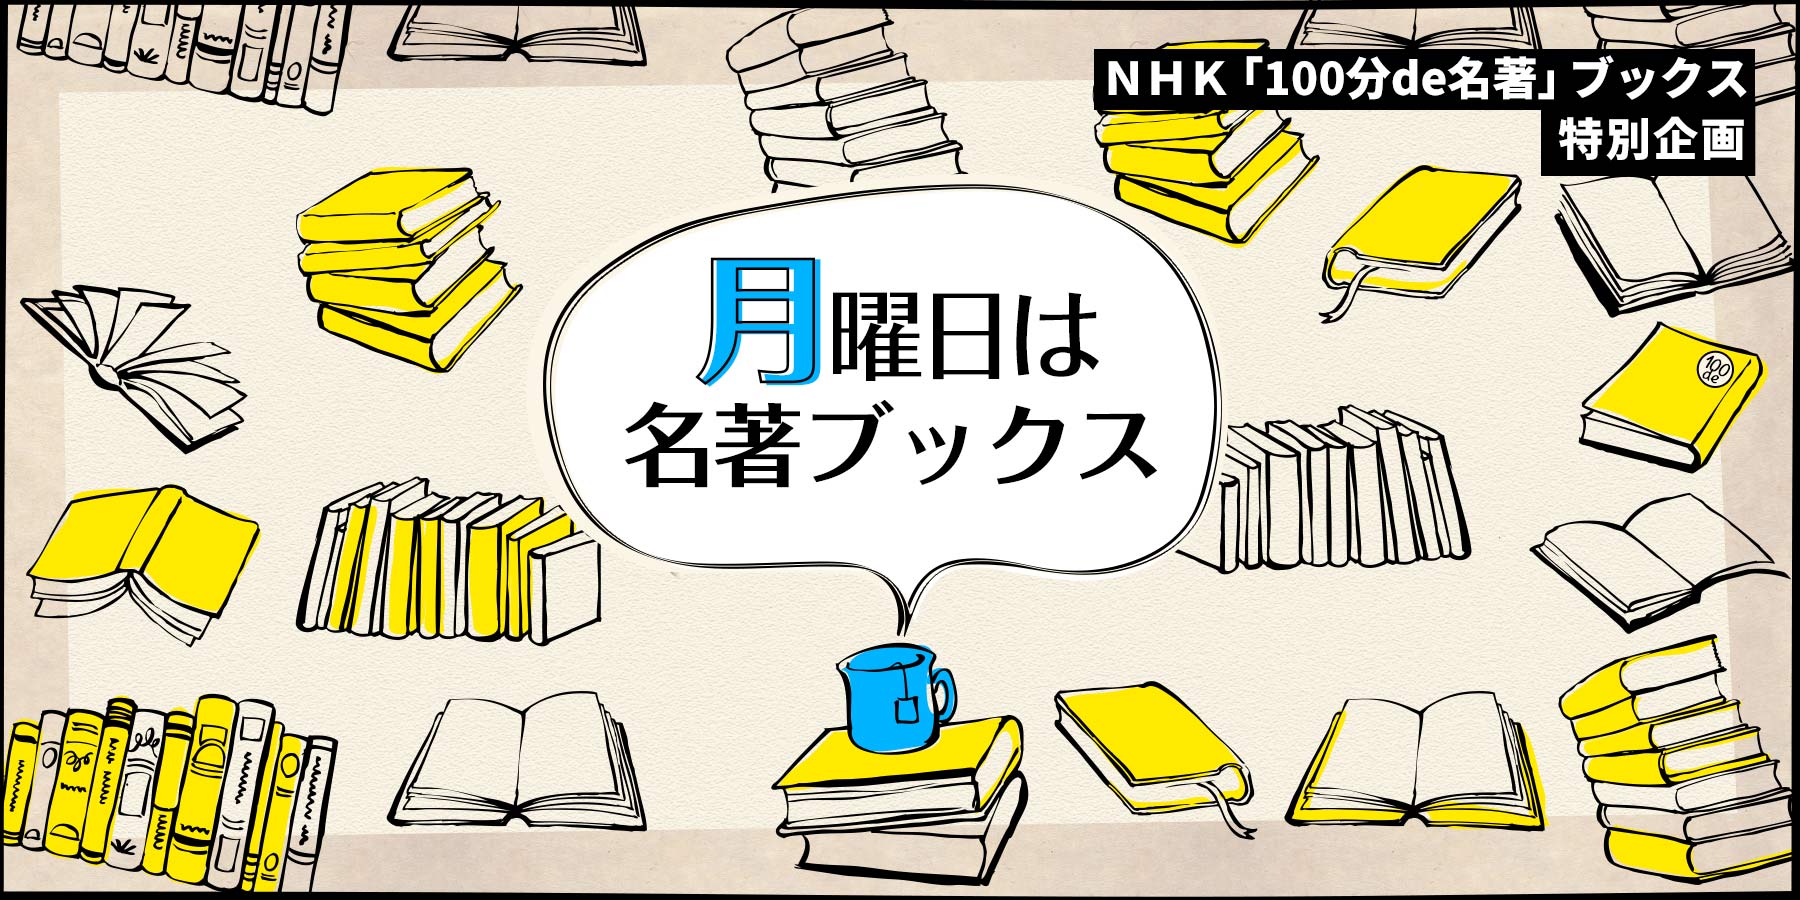 NHK「100分de名著」ブックスの古今東西の名著読み解きを、10分で体感